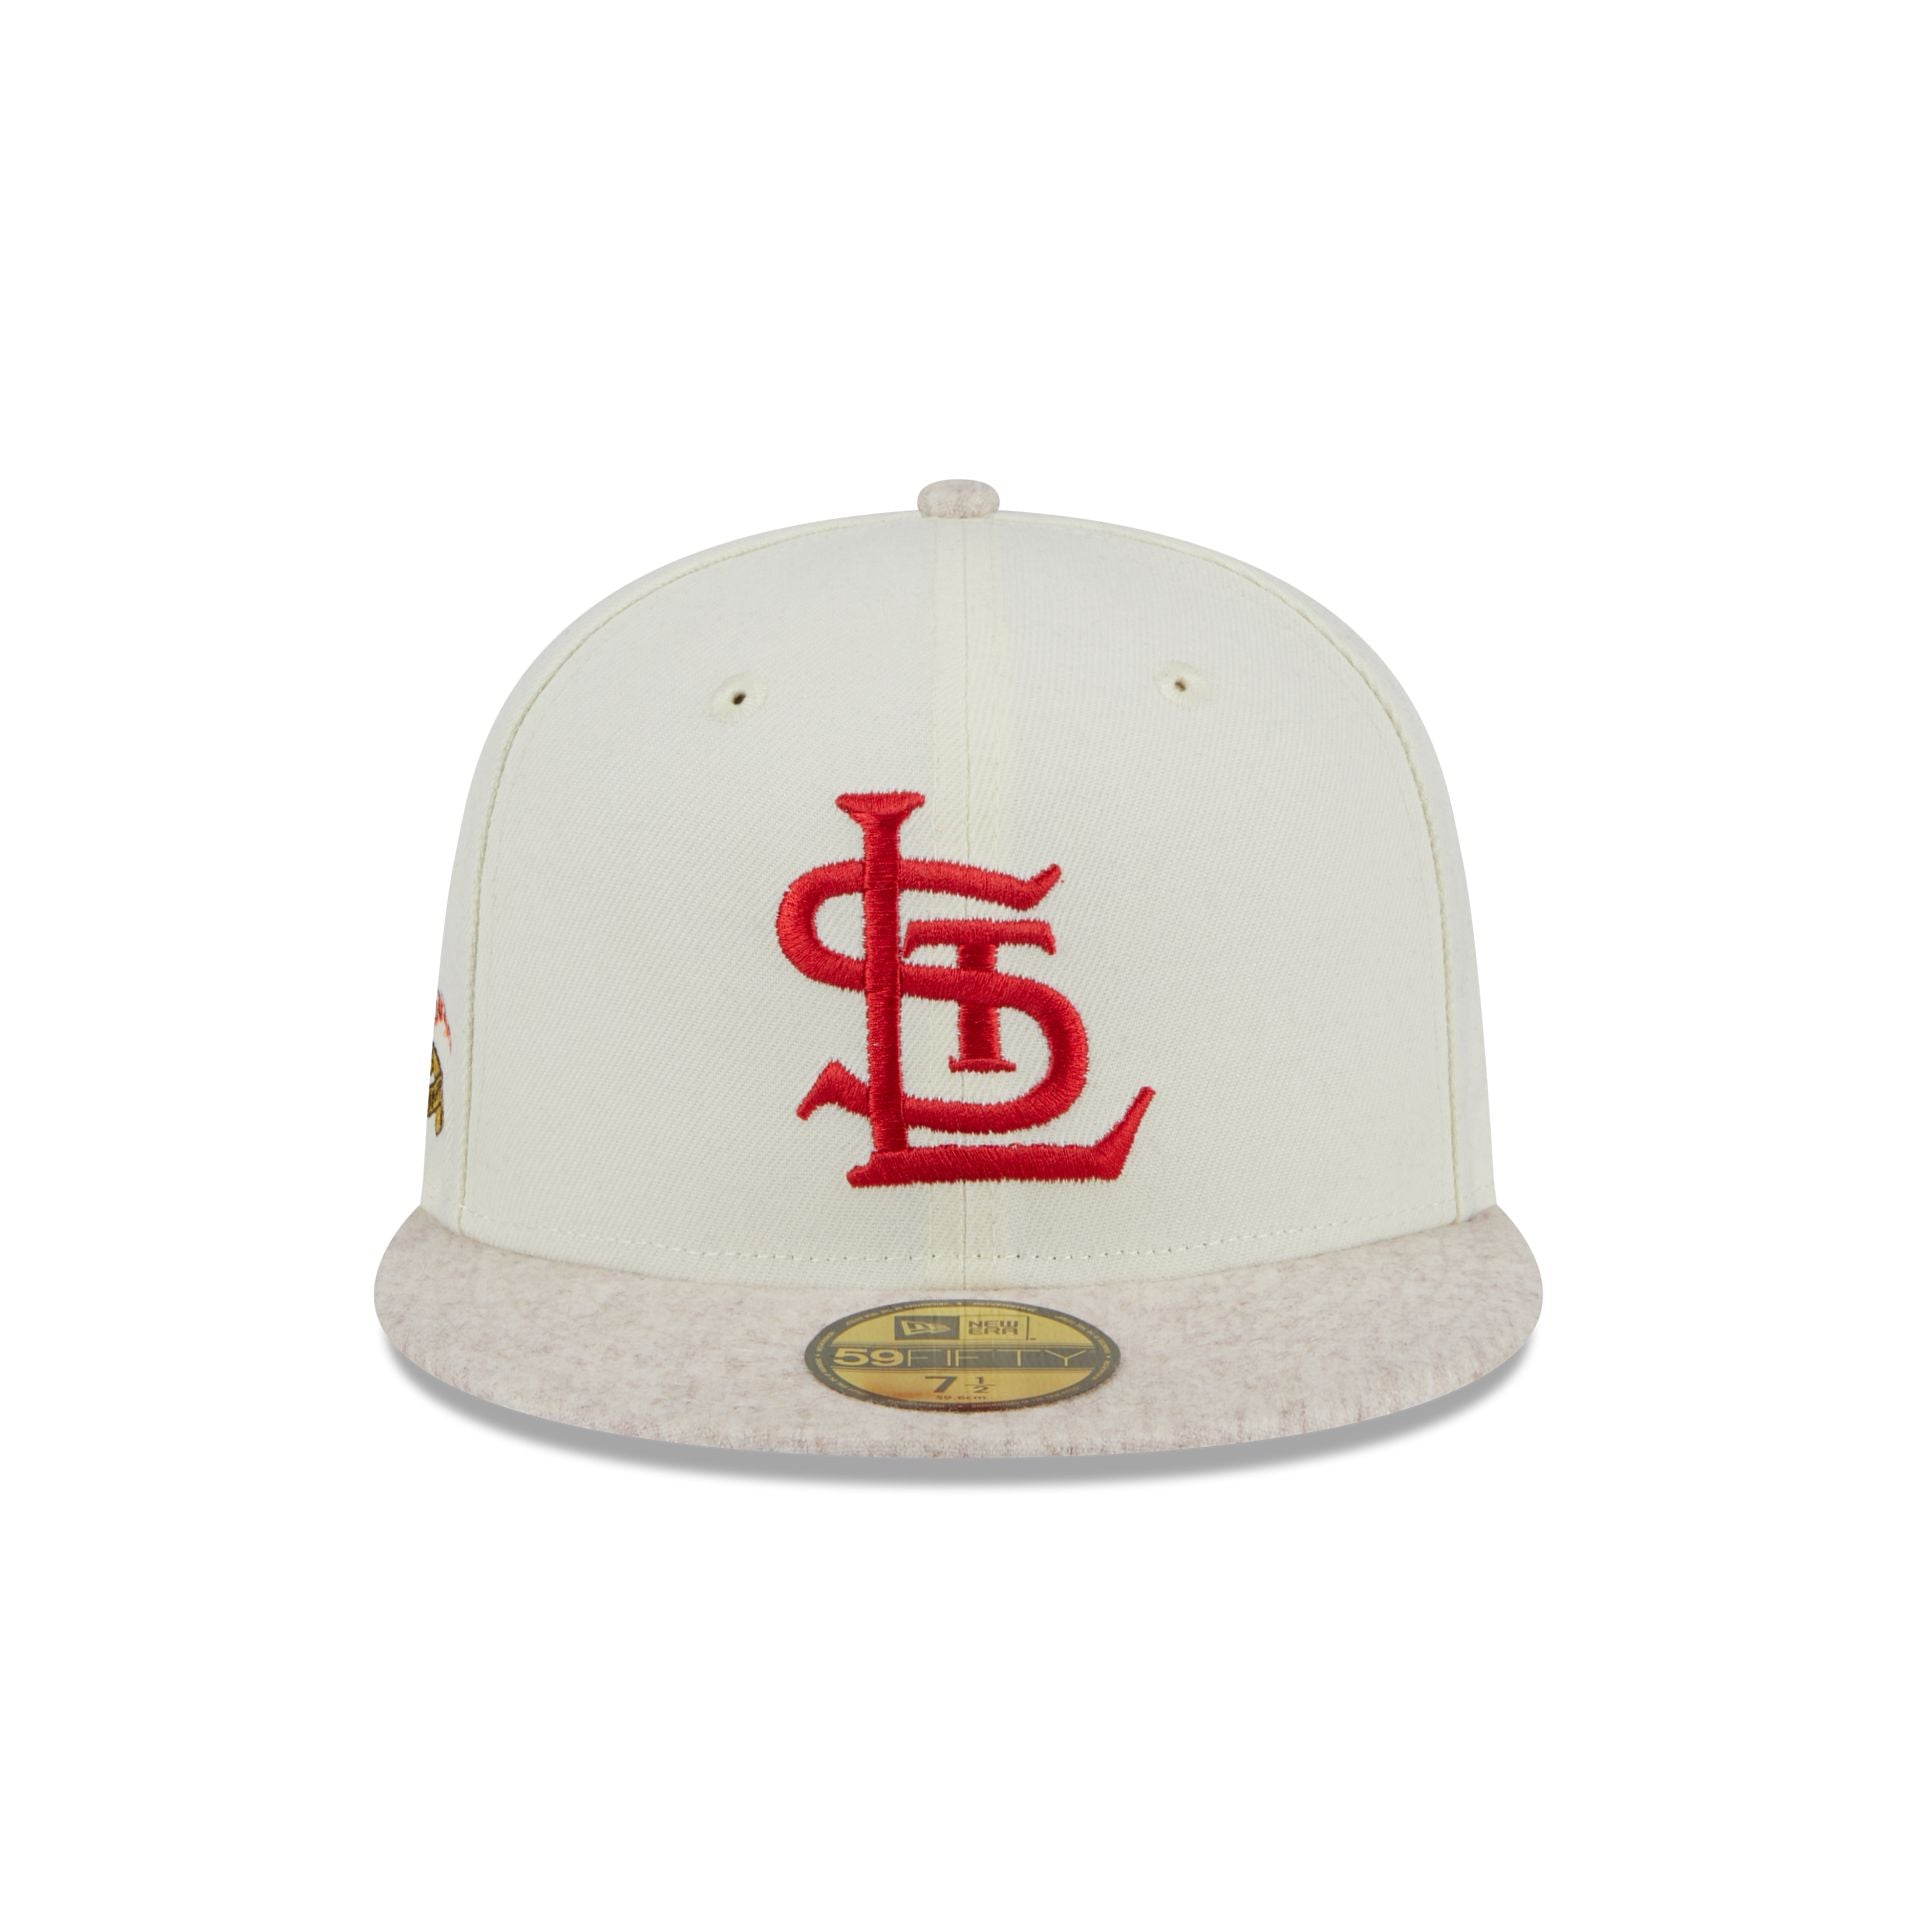 Men's St. Louis Cardinals Hats